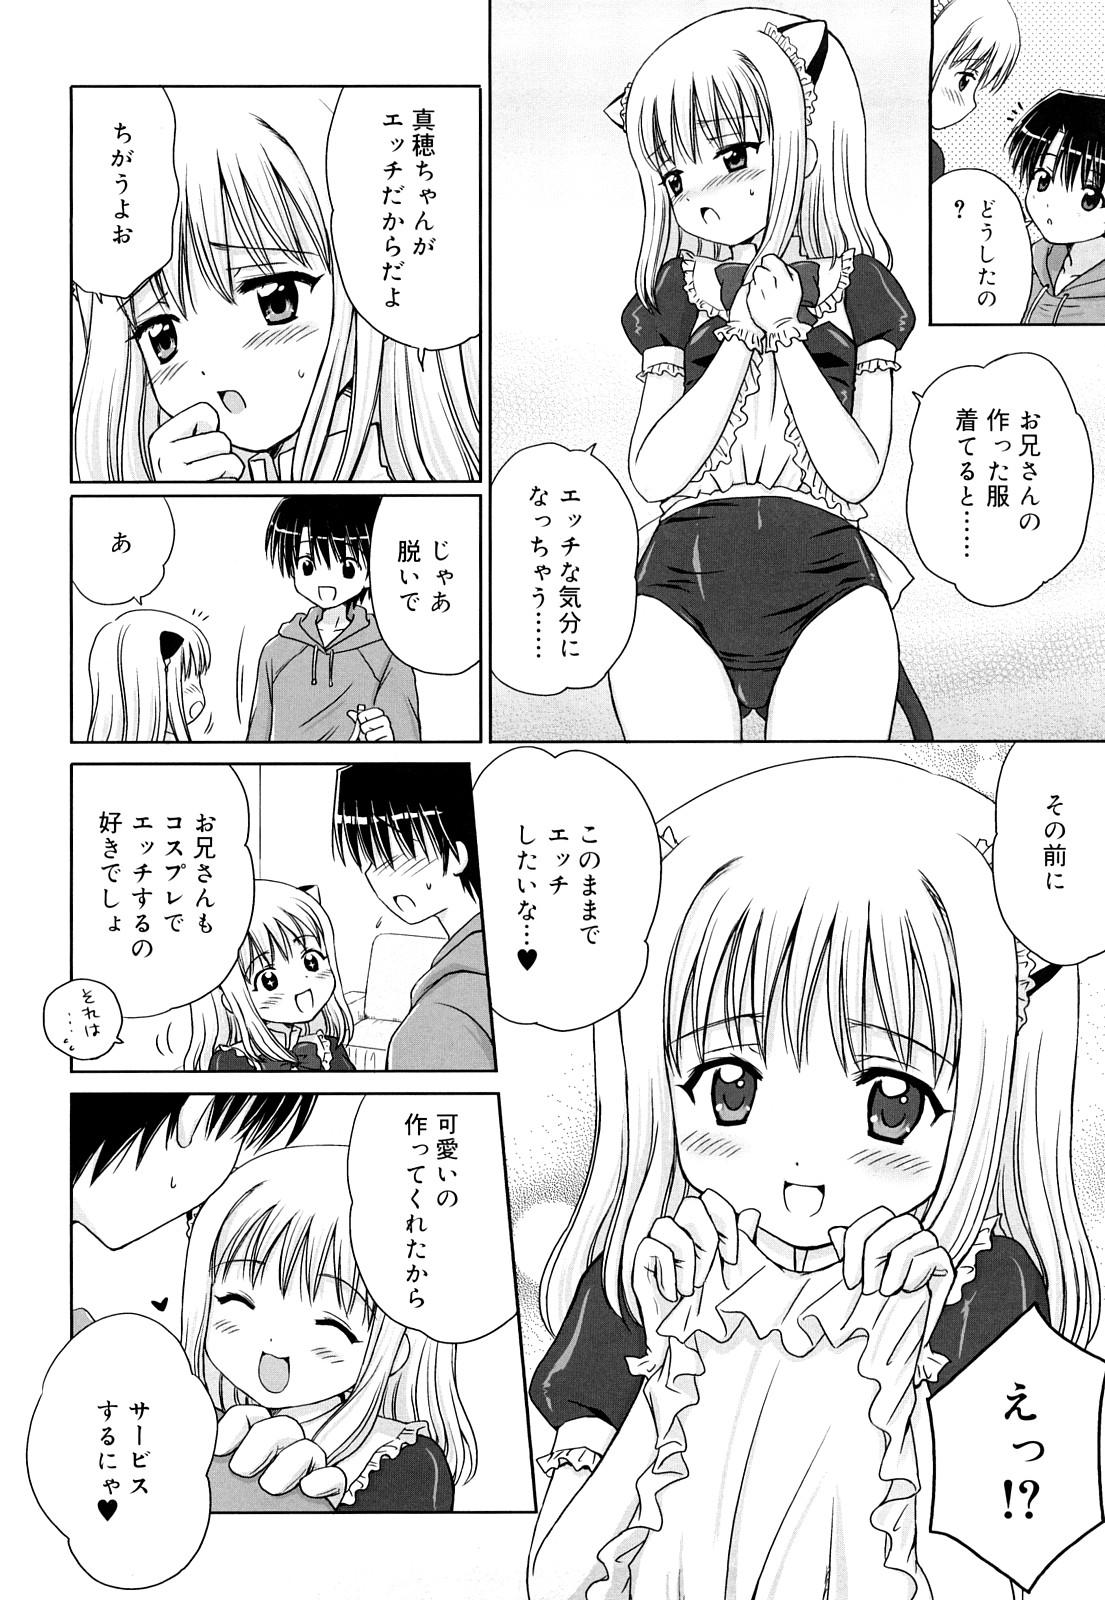 Shesafreak Daisuki Daisuki Sexo - Page 9